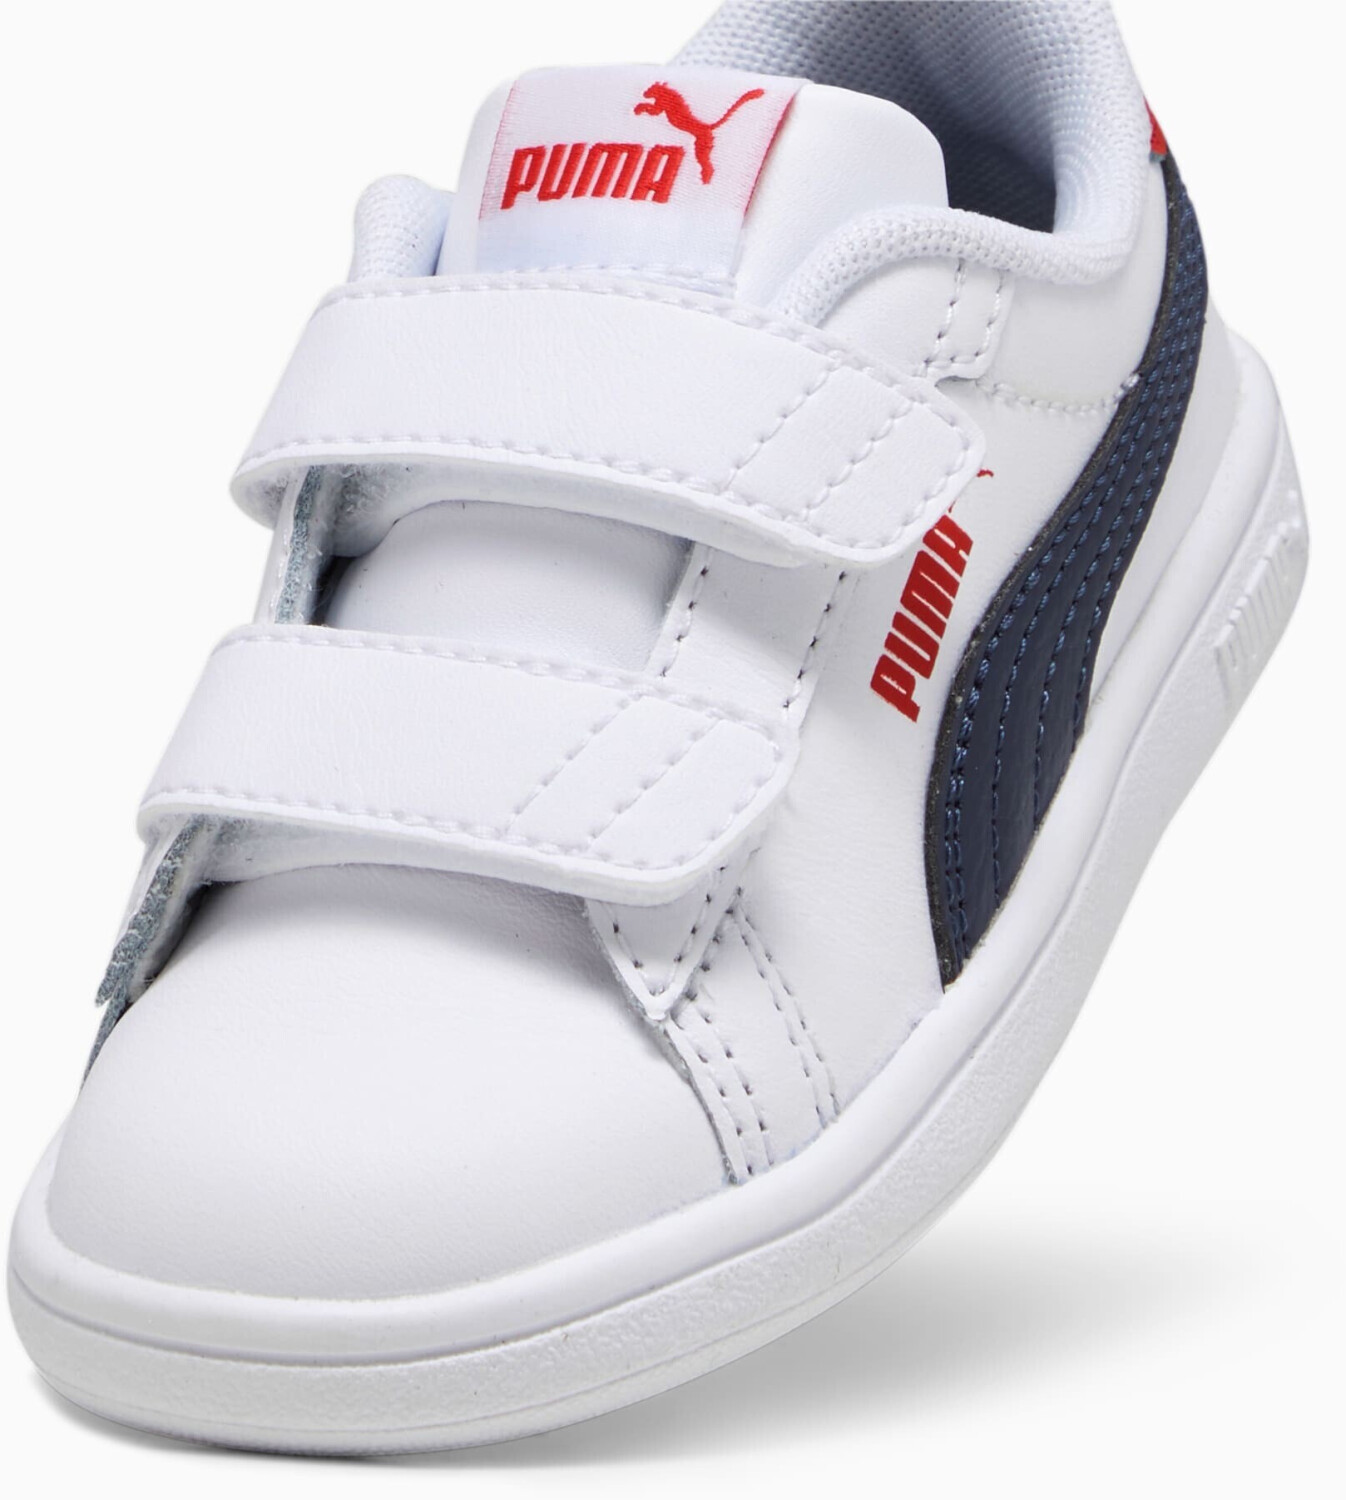 Compara puma 3.0 white/puma Leather red desde Baby time Smash (392034-11) | 41,95 Puma € en navy/for V all idealo precios